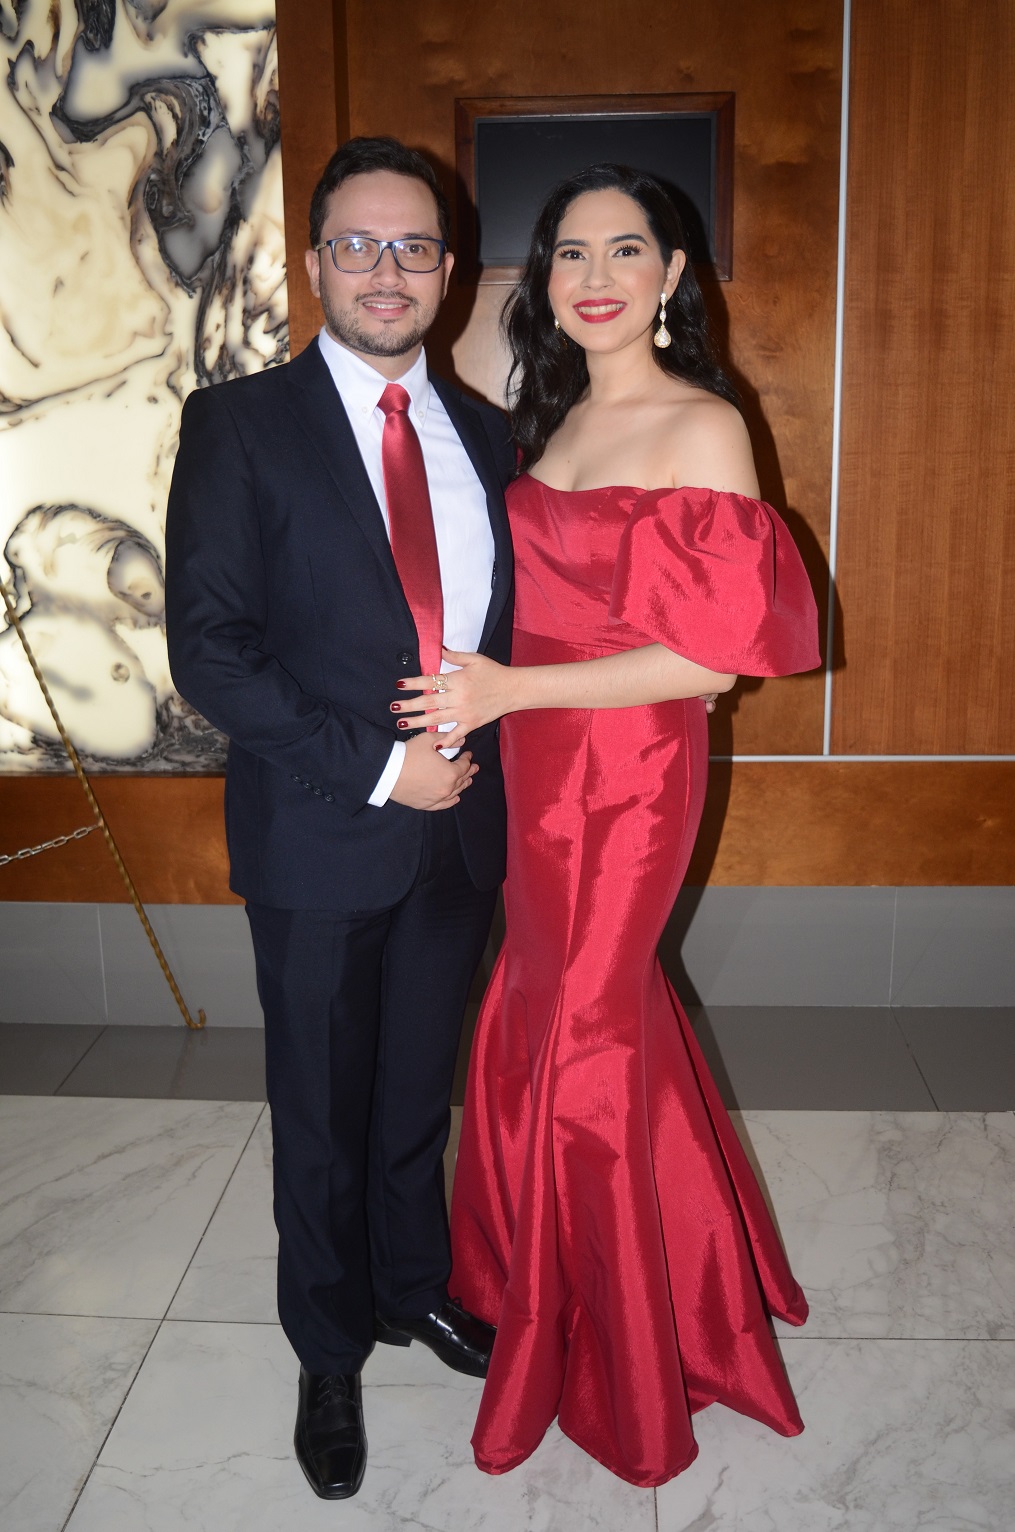 Jaime Cerritos y Cristy Cruz se dan el “Sí acepto” en una boda llena de amor y alegría